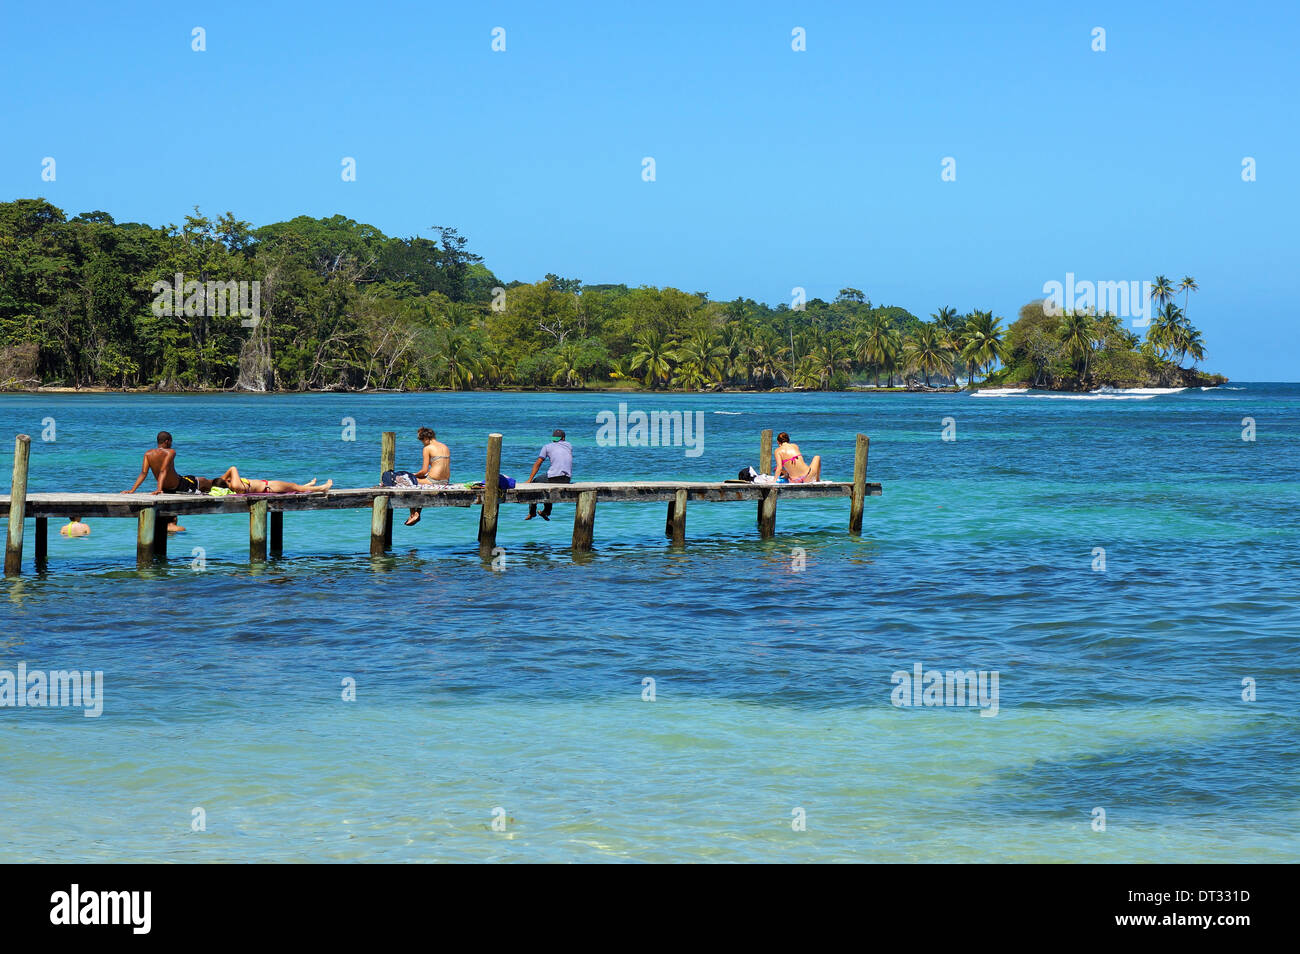 Les touristes sur un quai en bois sur la mer des Caraïbes et la côte tropical avec une végétation luxuriante en arrière-plan, Bocas del Toro, PANAMA Banque D'Images